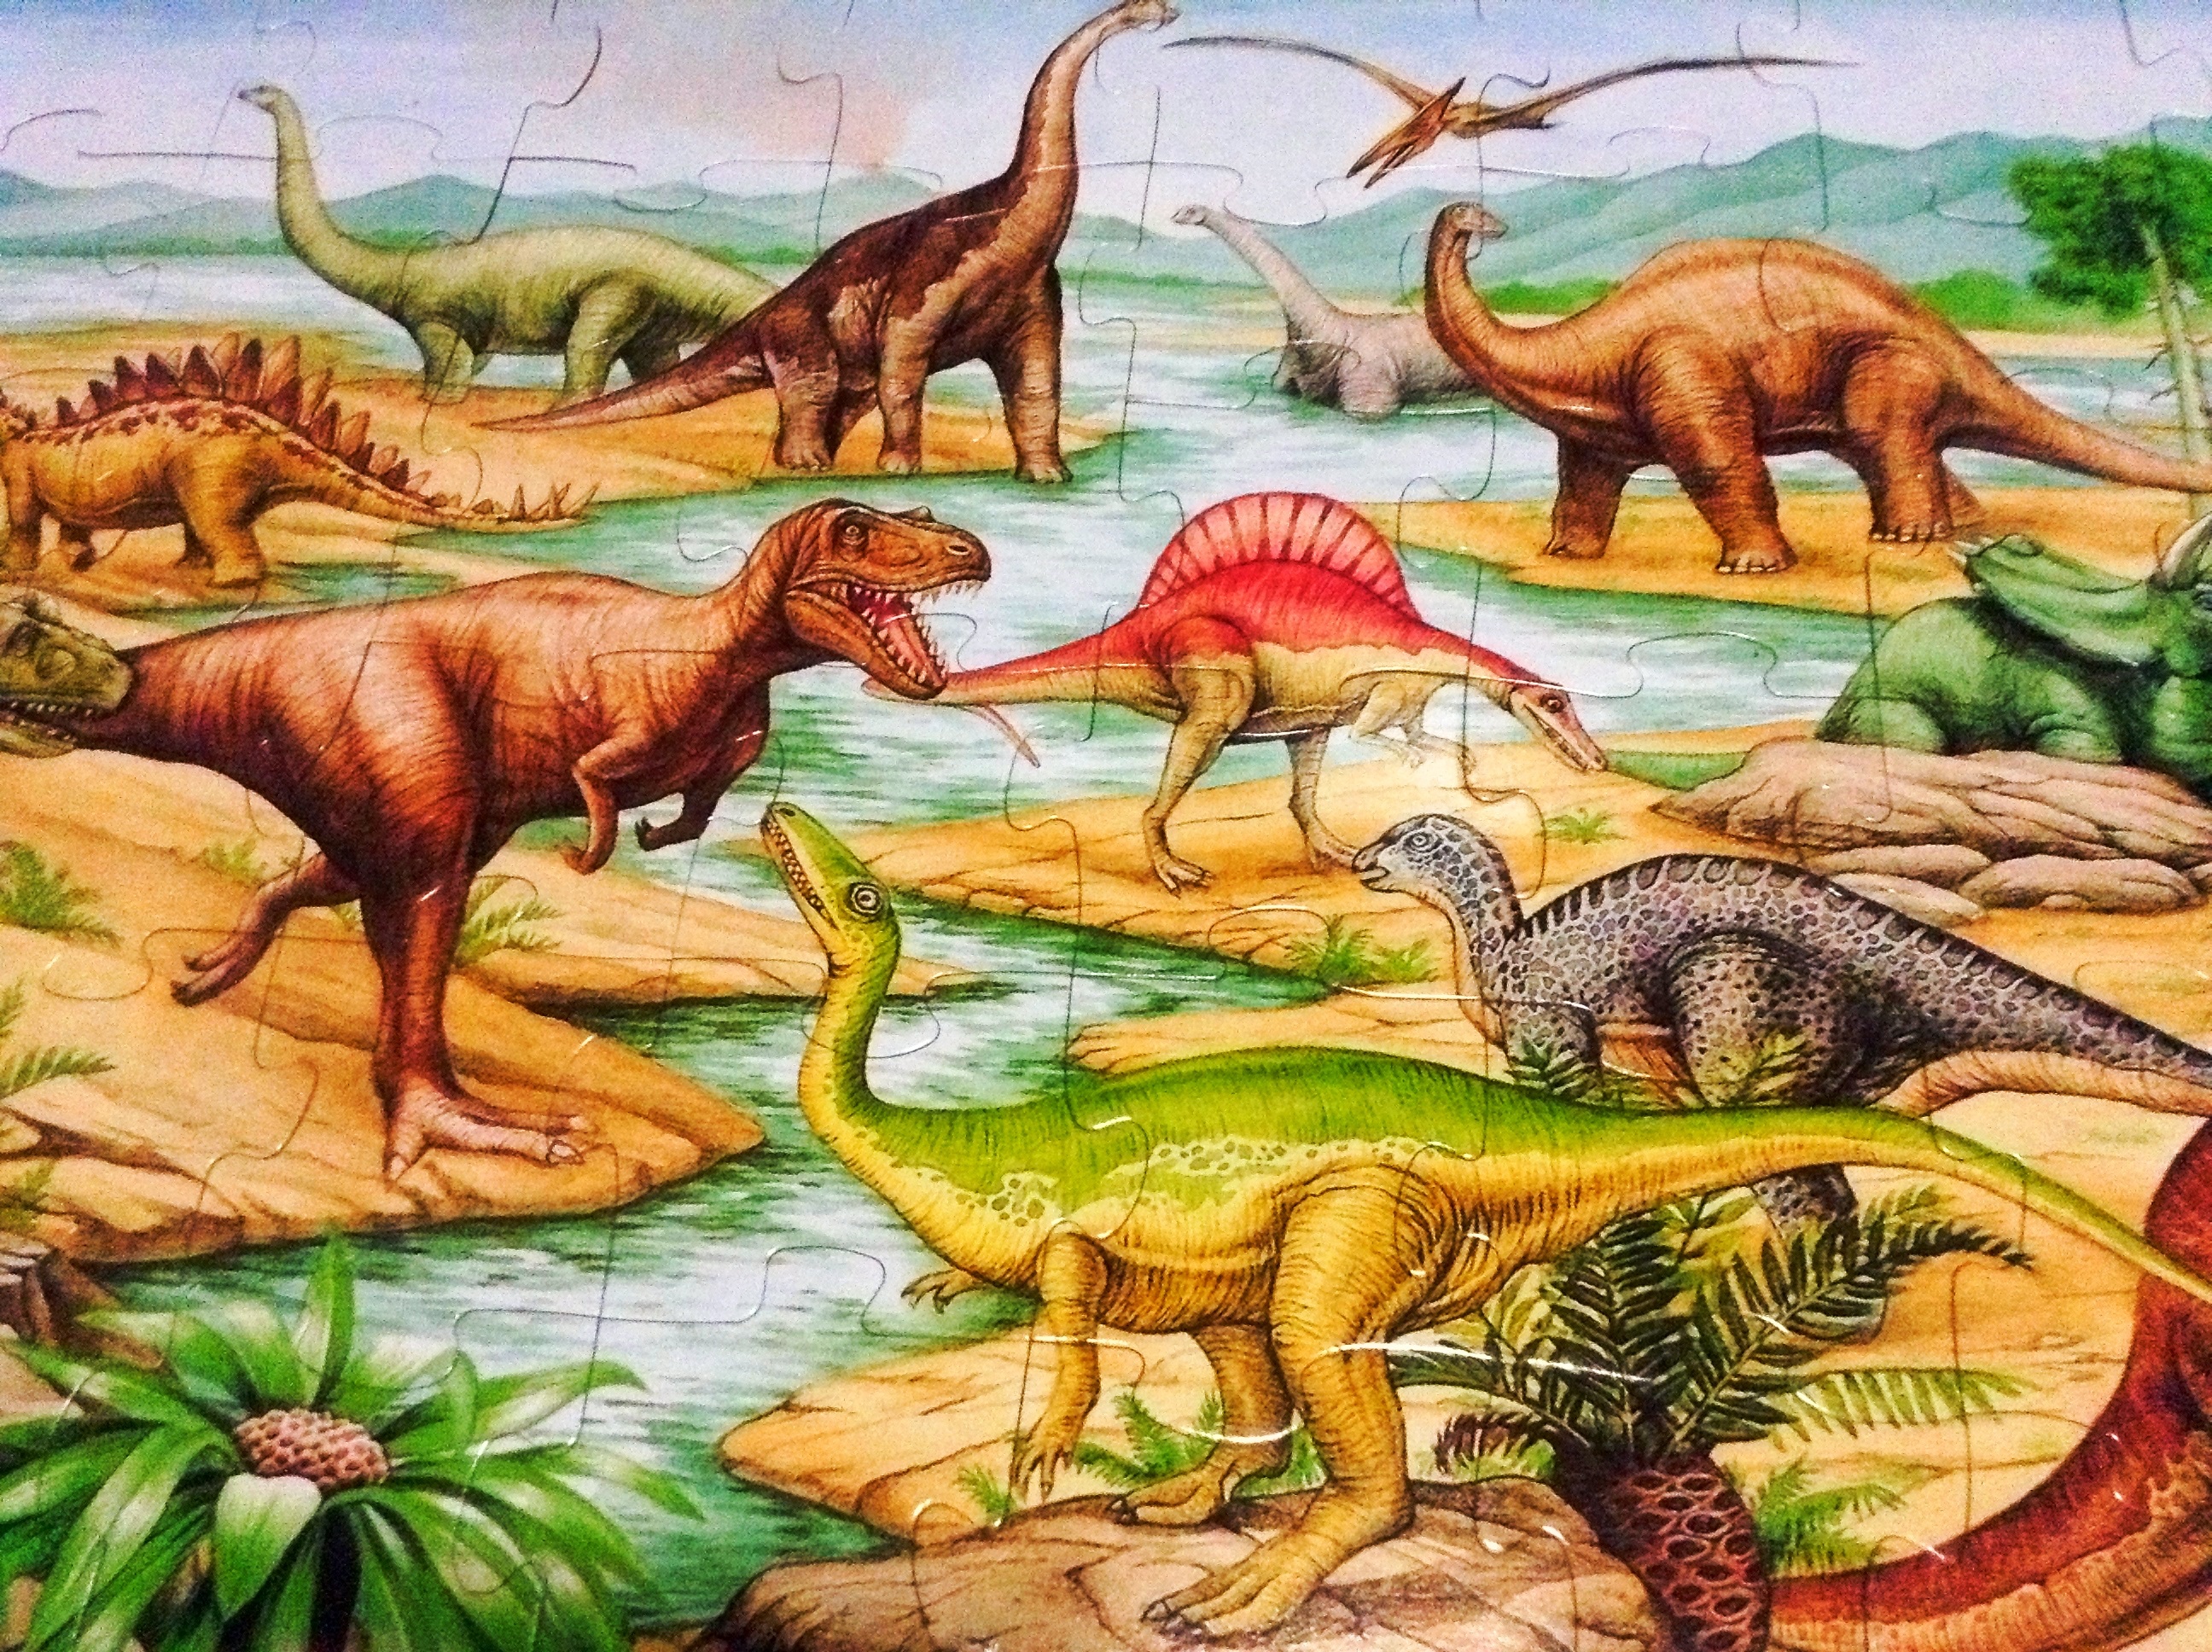 Floor puzzle, Dinosaurs. Puzzle de podea, Dinozauri